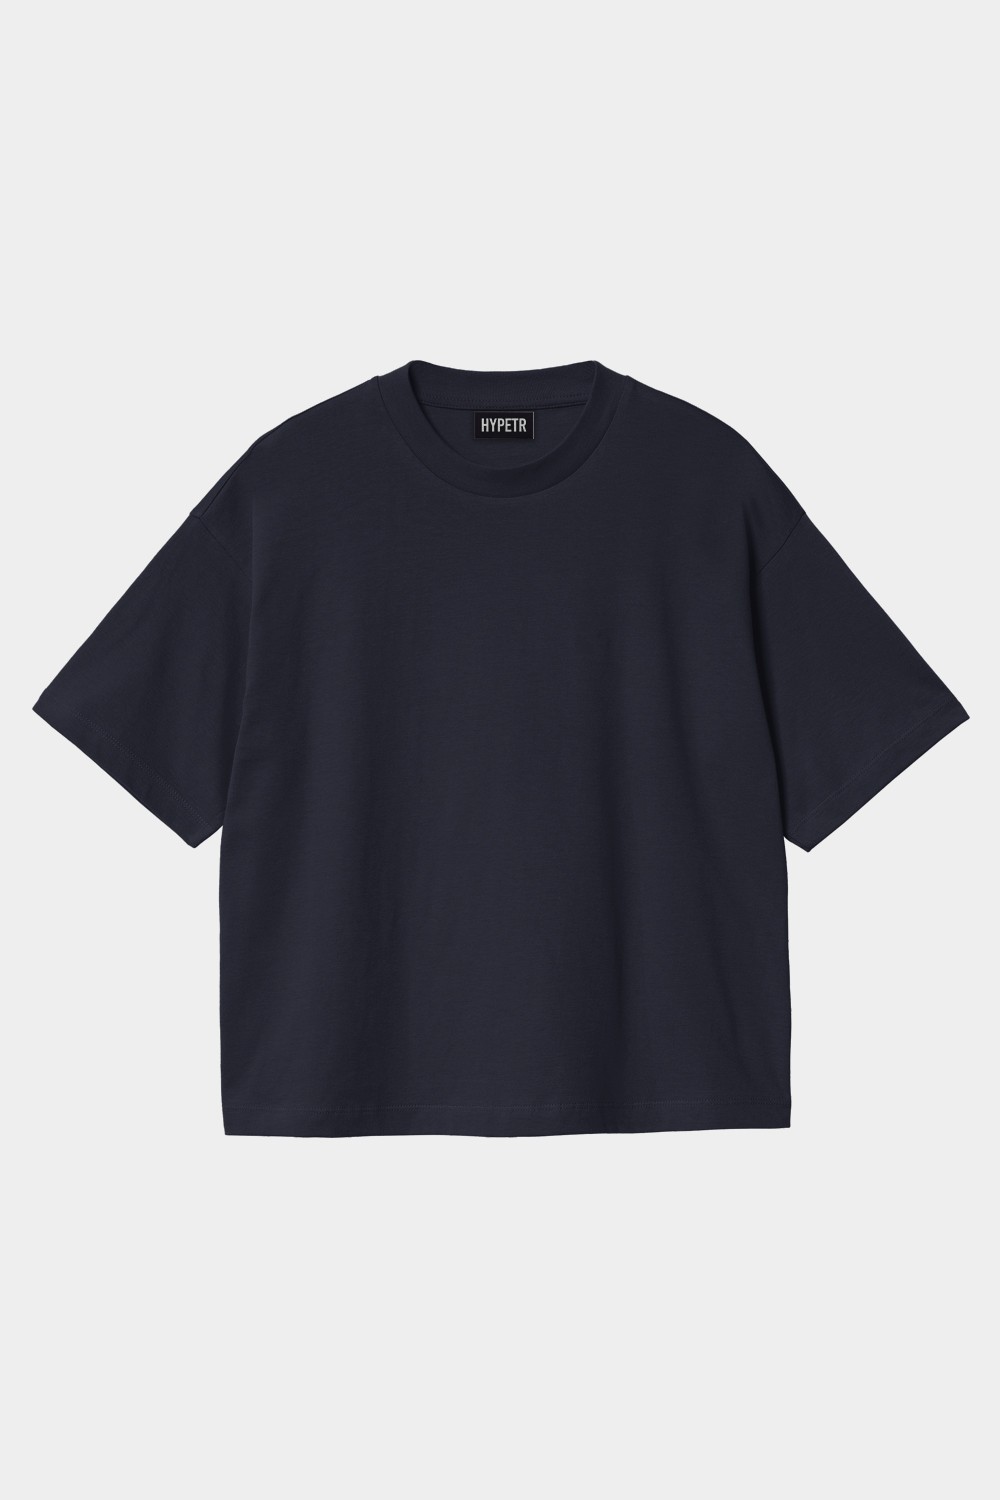 Oversized Basic T Shirt (HYPE-16)